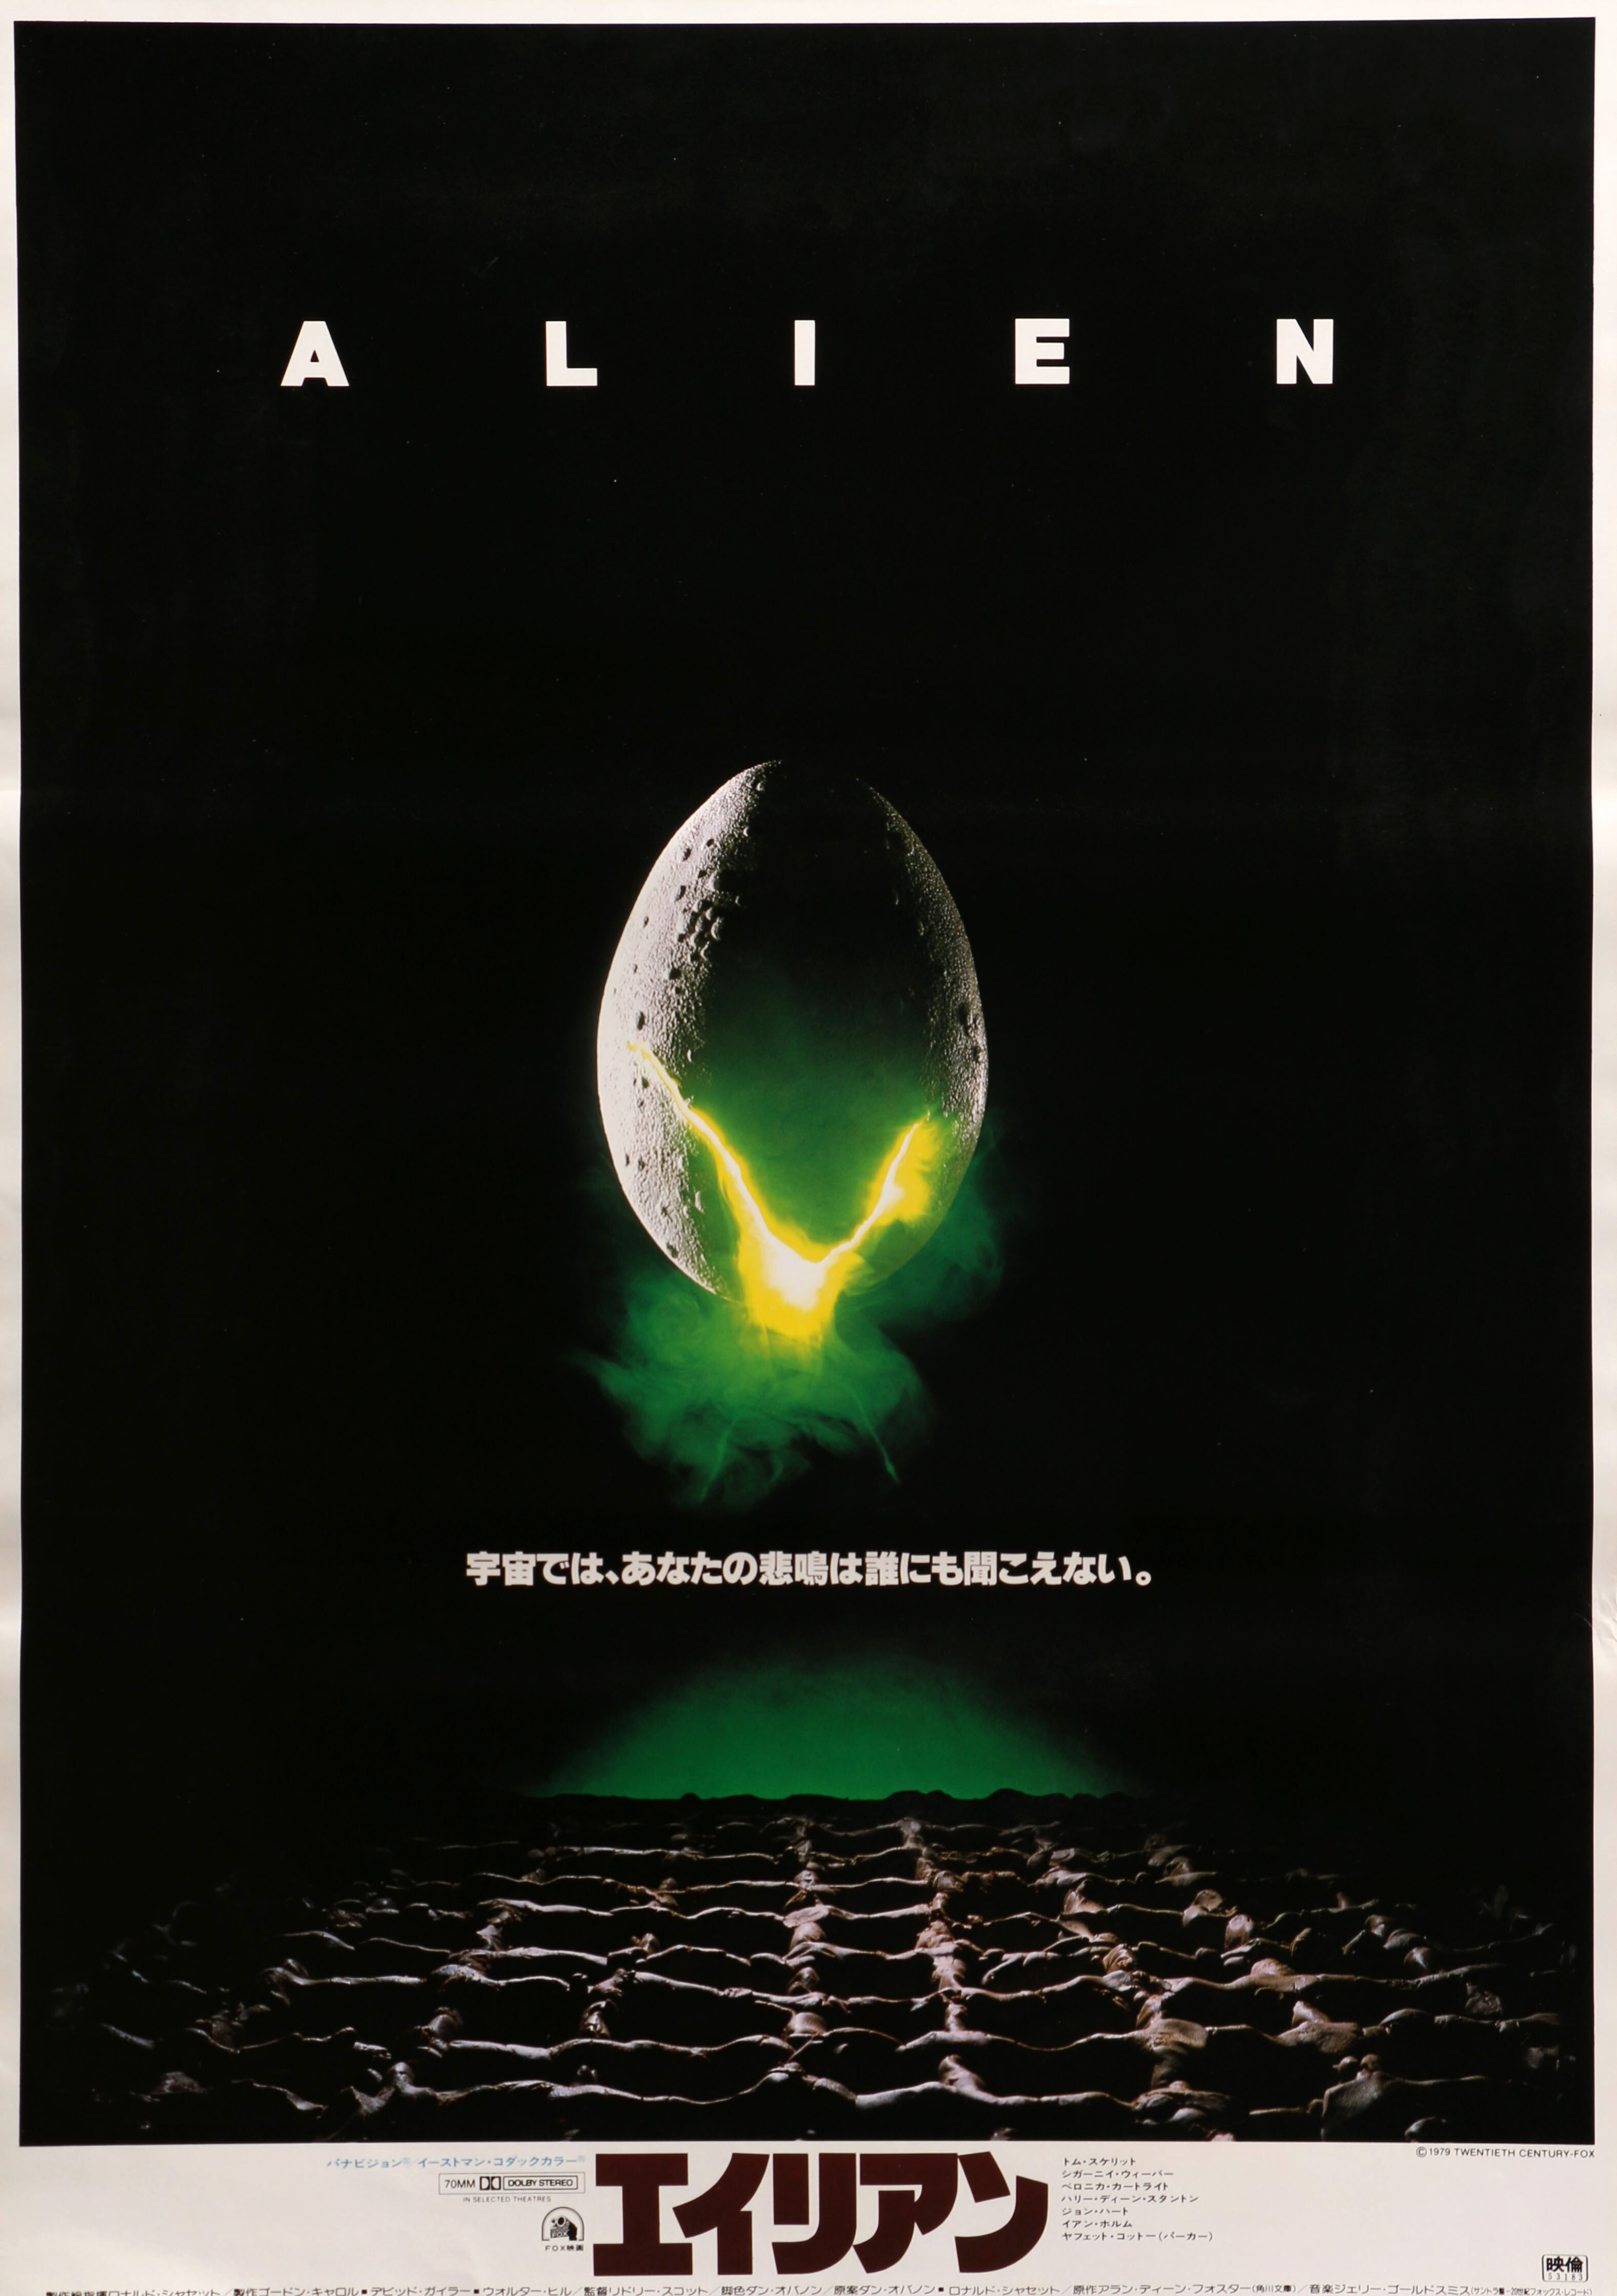 Чужой (Alien, 1979), режиссёр Ридли Скотт, минималистичный постер к фильму (Япония, 1979 год), автор Стив Франкфурт